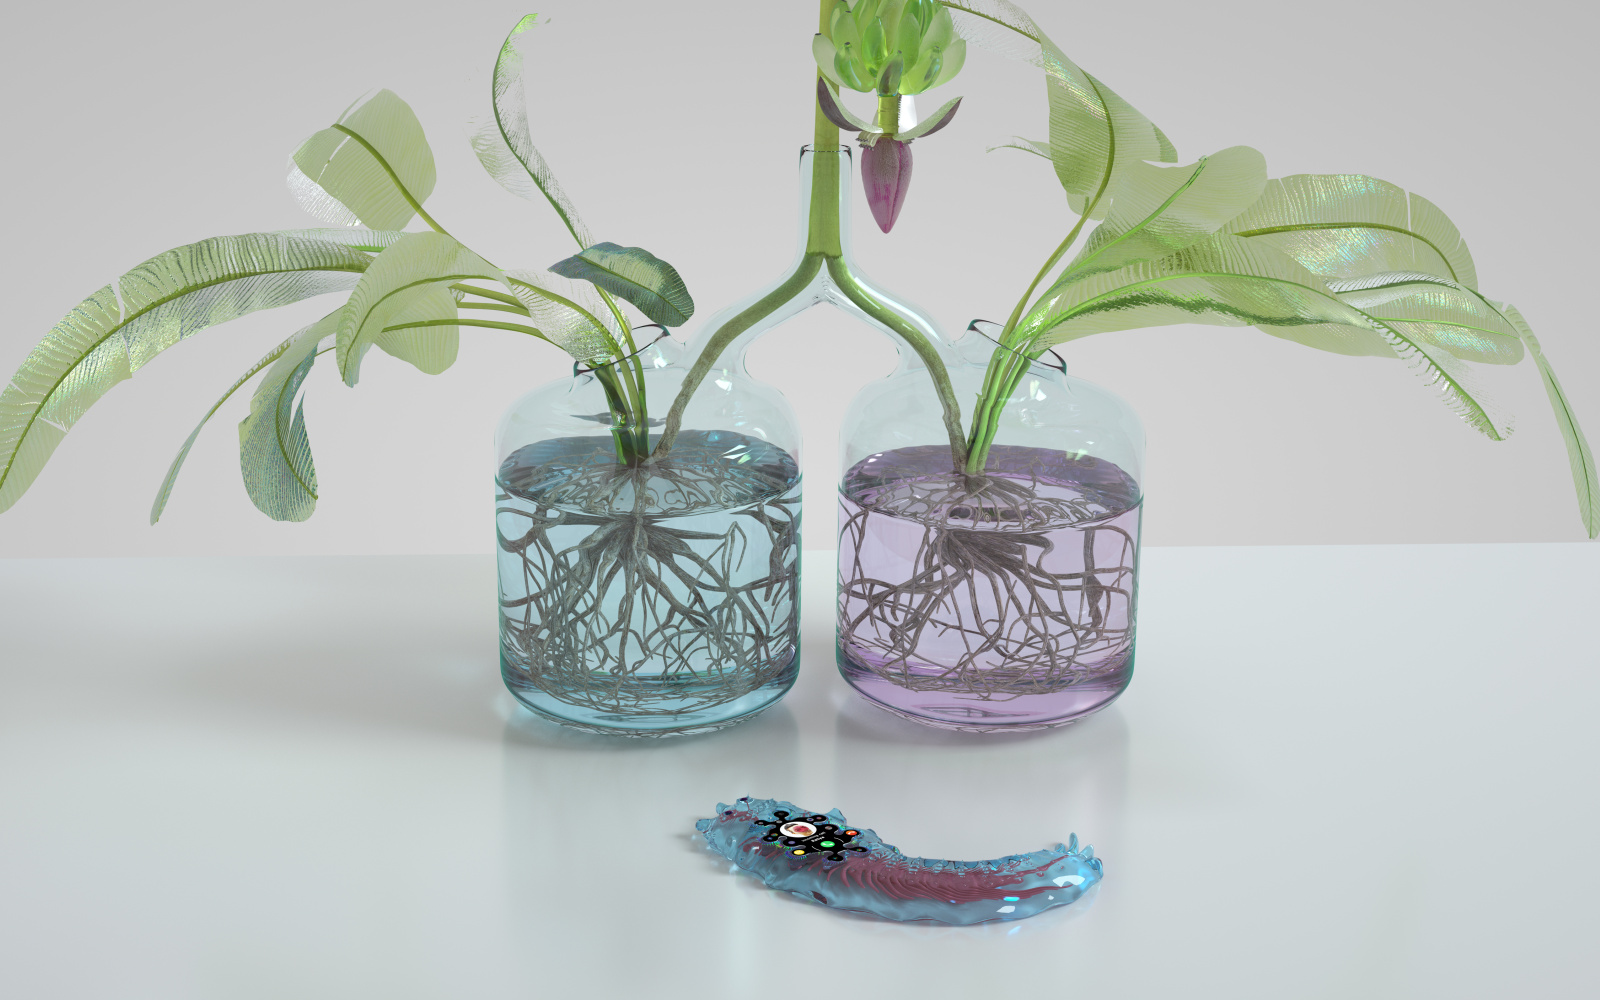 Zu sehen sind zwei mit einenader verbundene Vasen, aus denen sich eine Planze erstreckt